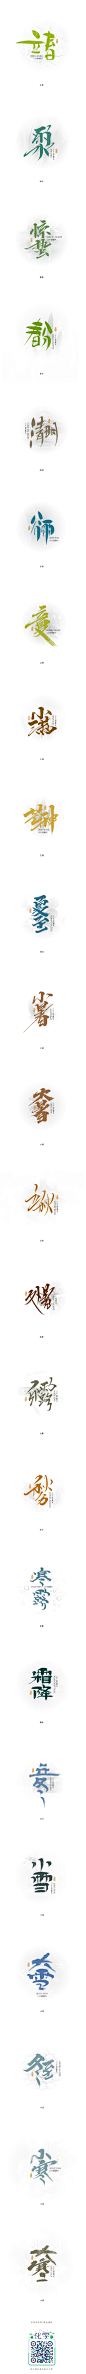 二十四节气-字体传奇网-中国首个字体品牌设计师交流网